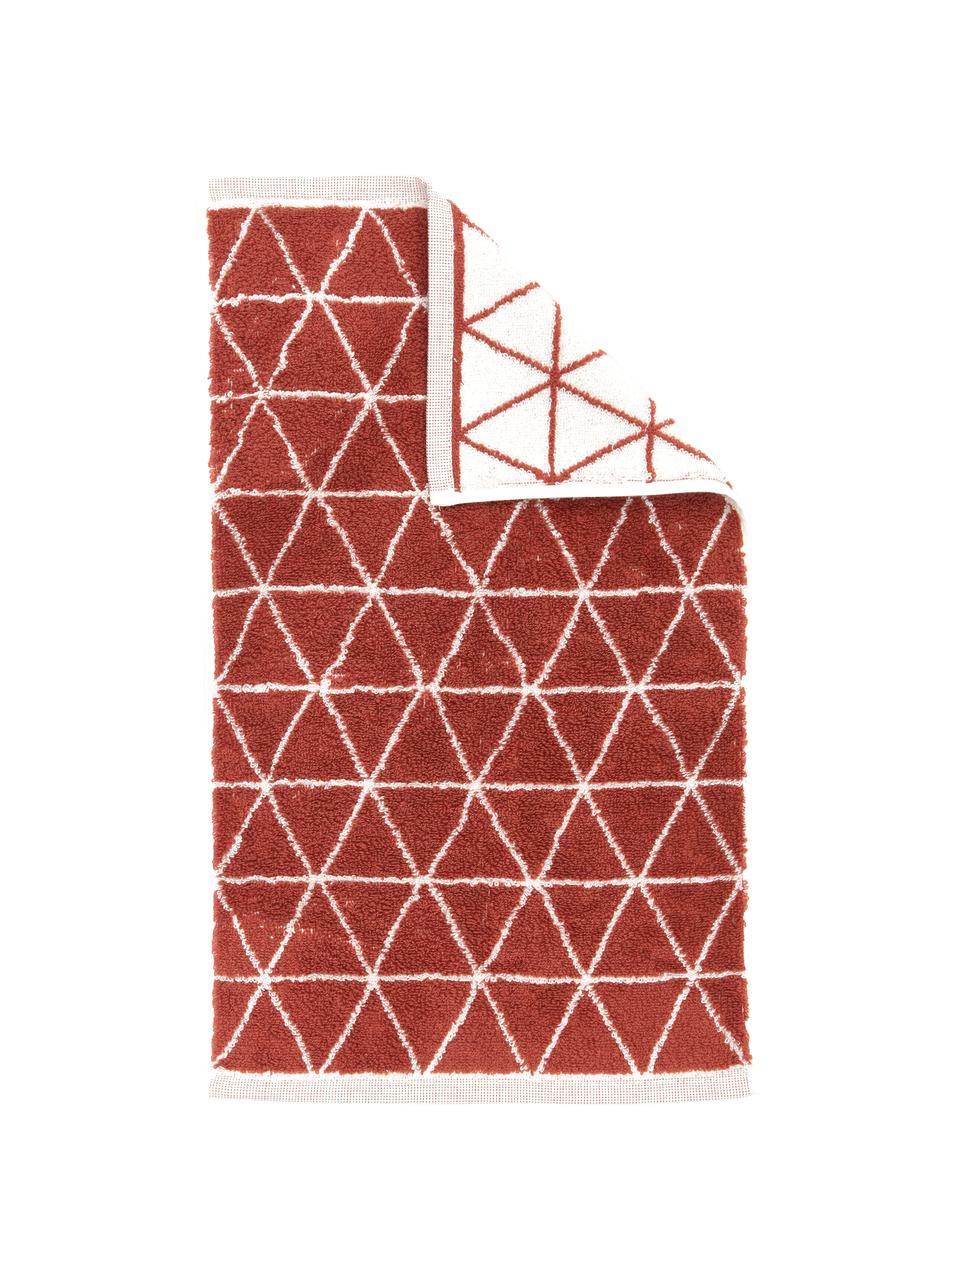 Wende-Handtuch Elina mit grafischem Muster, 100% Baumwolle, mittelschwere Qualität 550 g/m², Terrakotta, Cremeweiß, Gästehandtuch